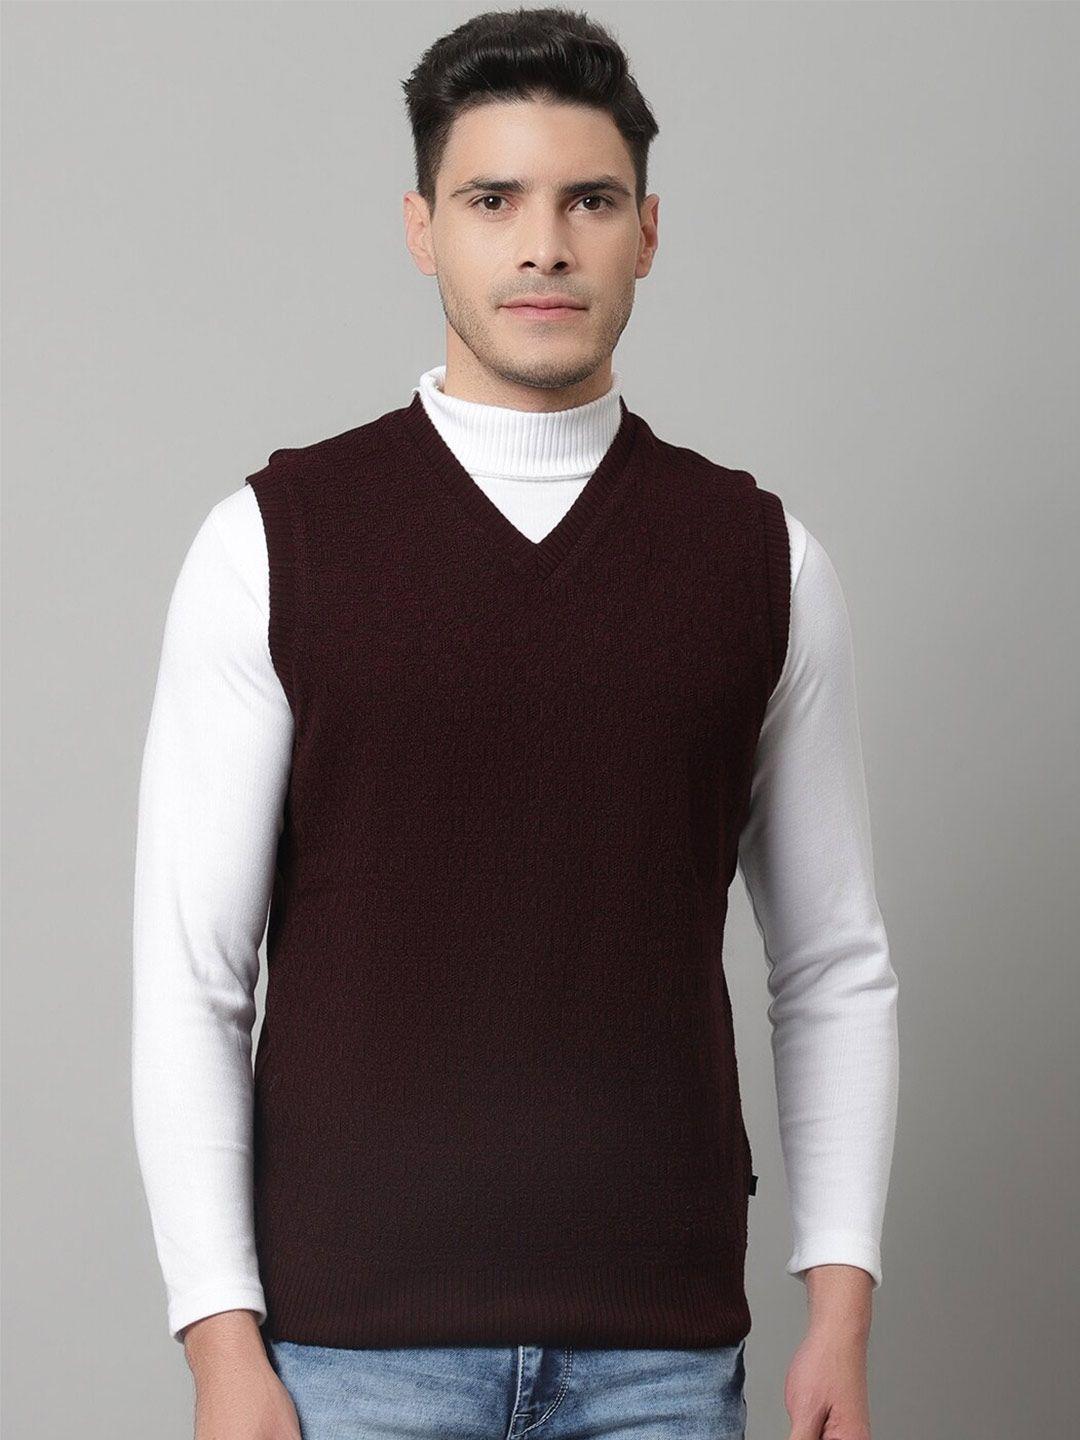 cantabil-men-maroon-wool-sweater-vest